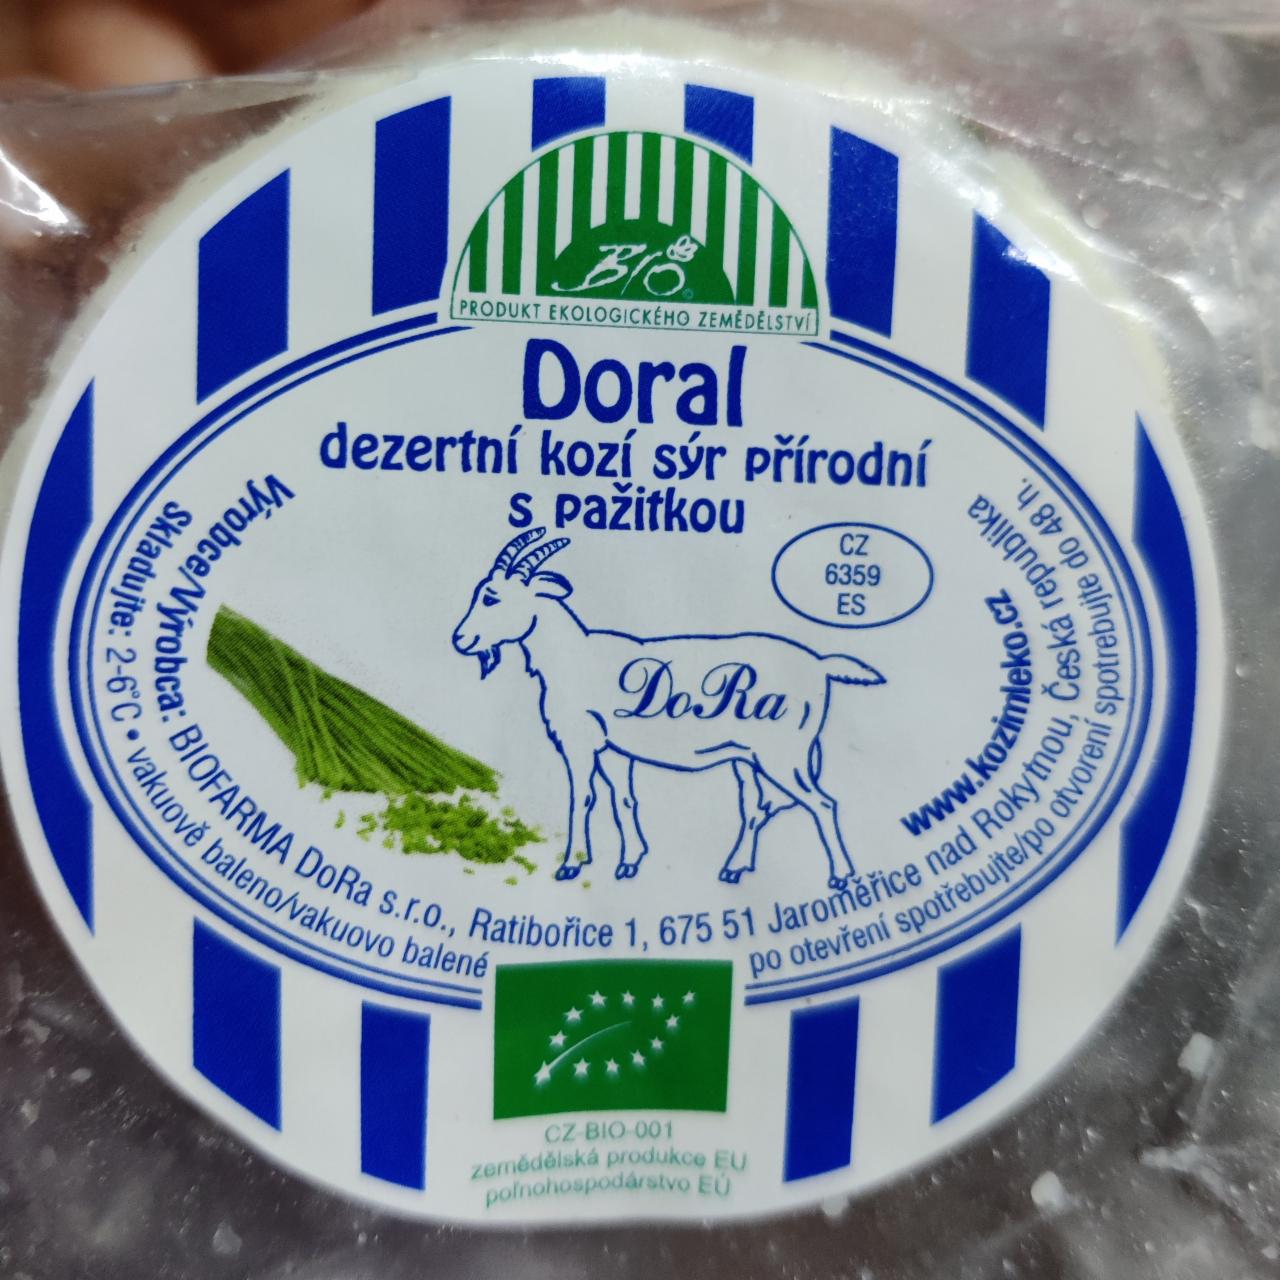 Fotografie - Bio Doral dezertní kozí sýr přírodní s pažitkou DoRa